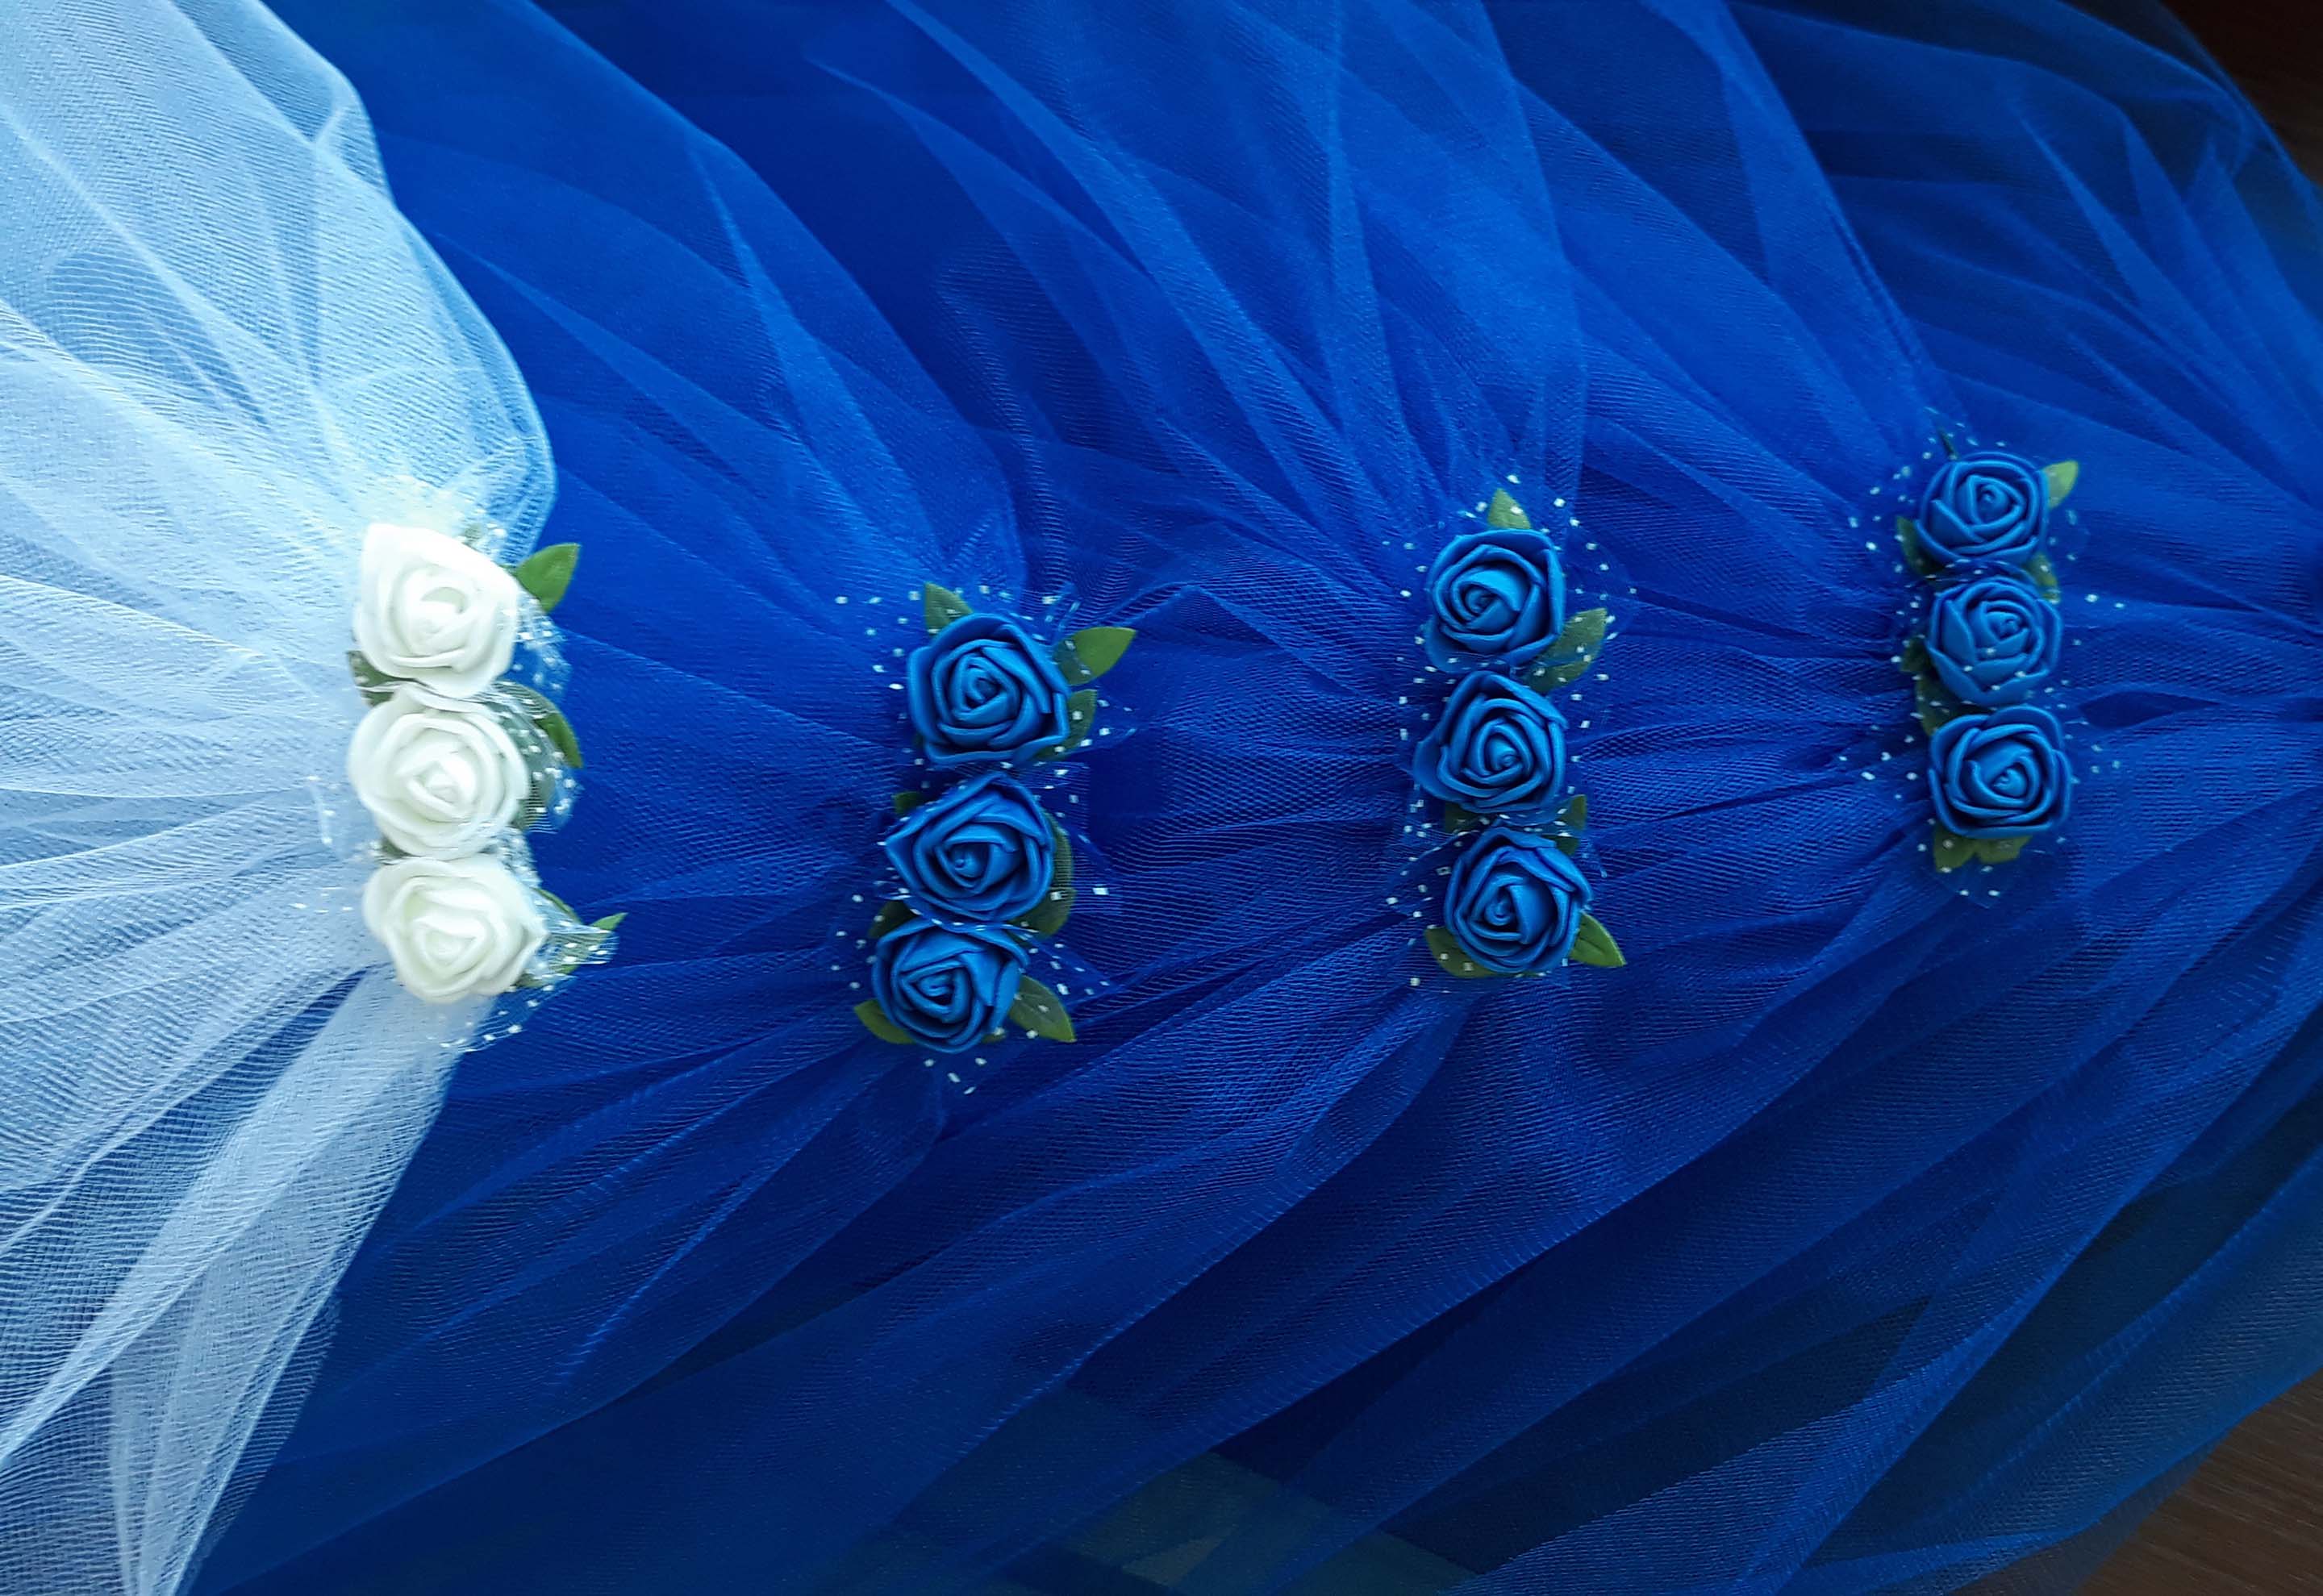 Фата с цветами для девичника в синих и голубых цветах